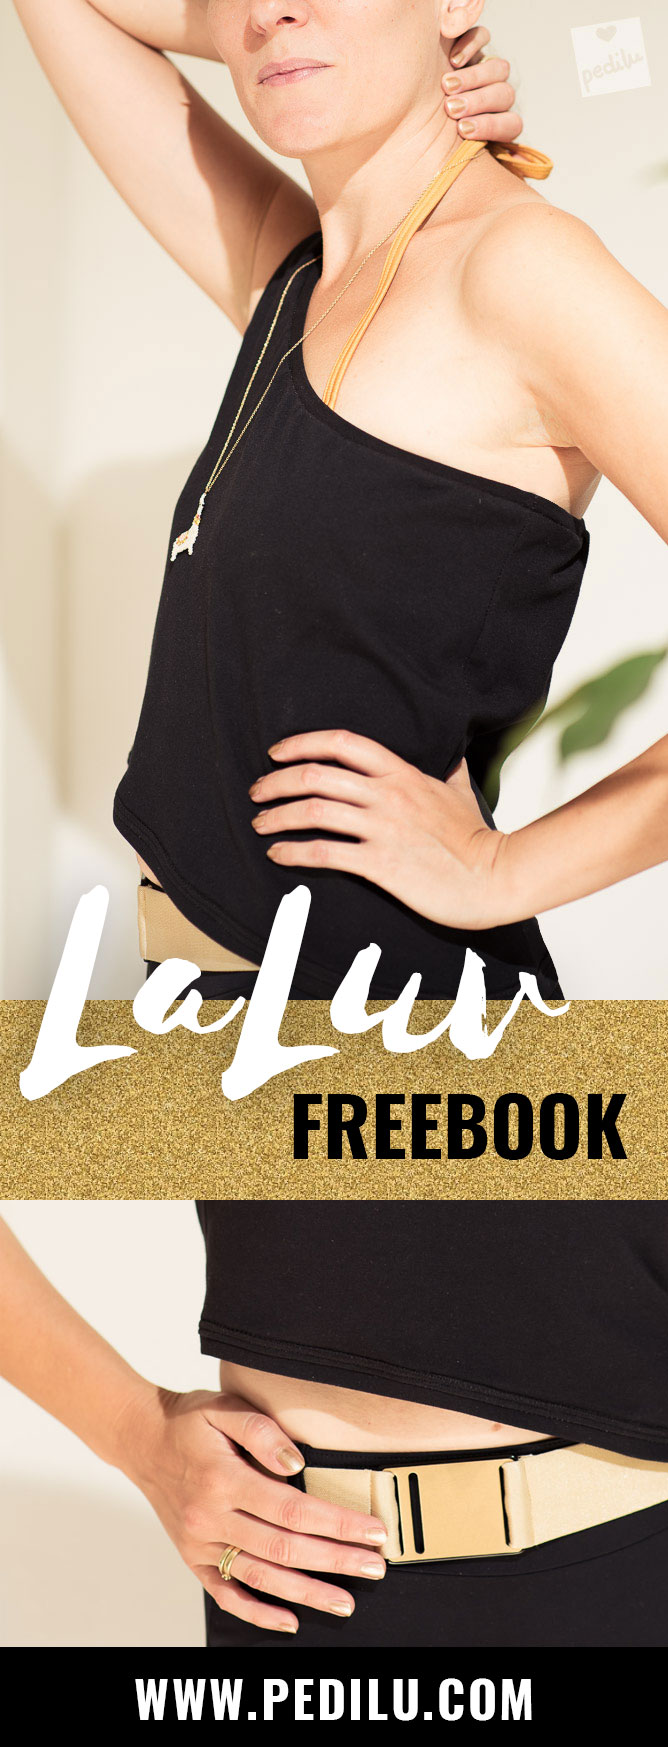 »LaLuv«, das sexy One-Shoulder-Top – für kurze Zeit als Freebook #nähen #sommer #freebie